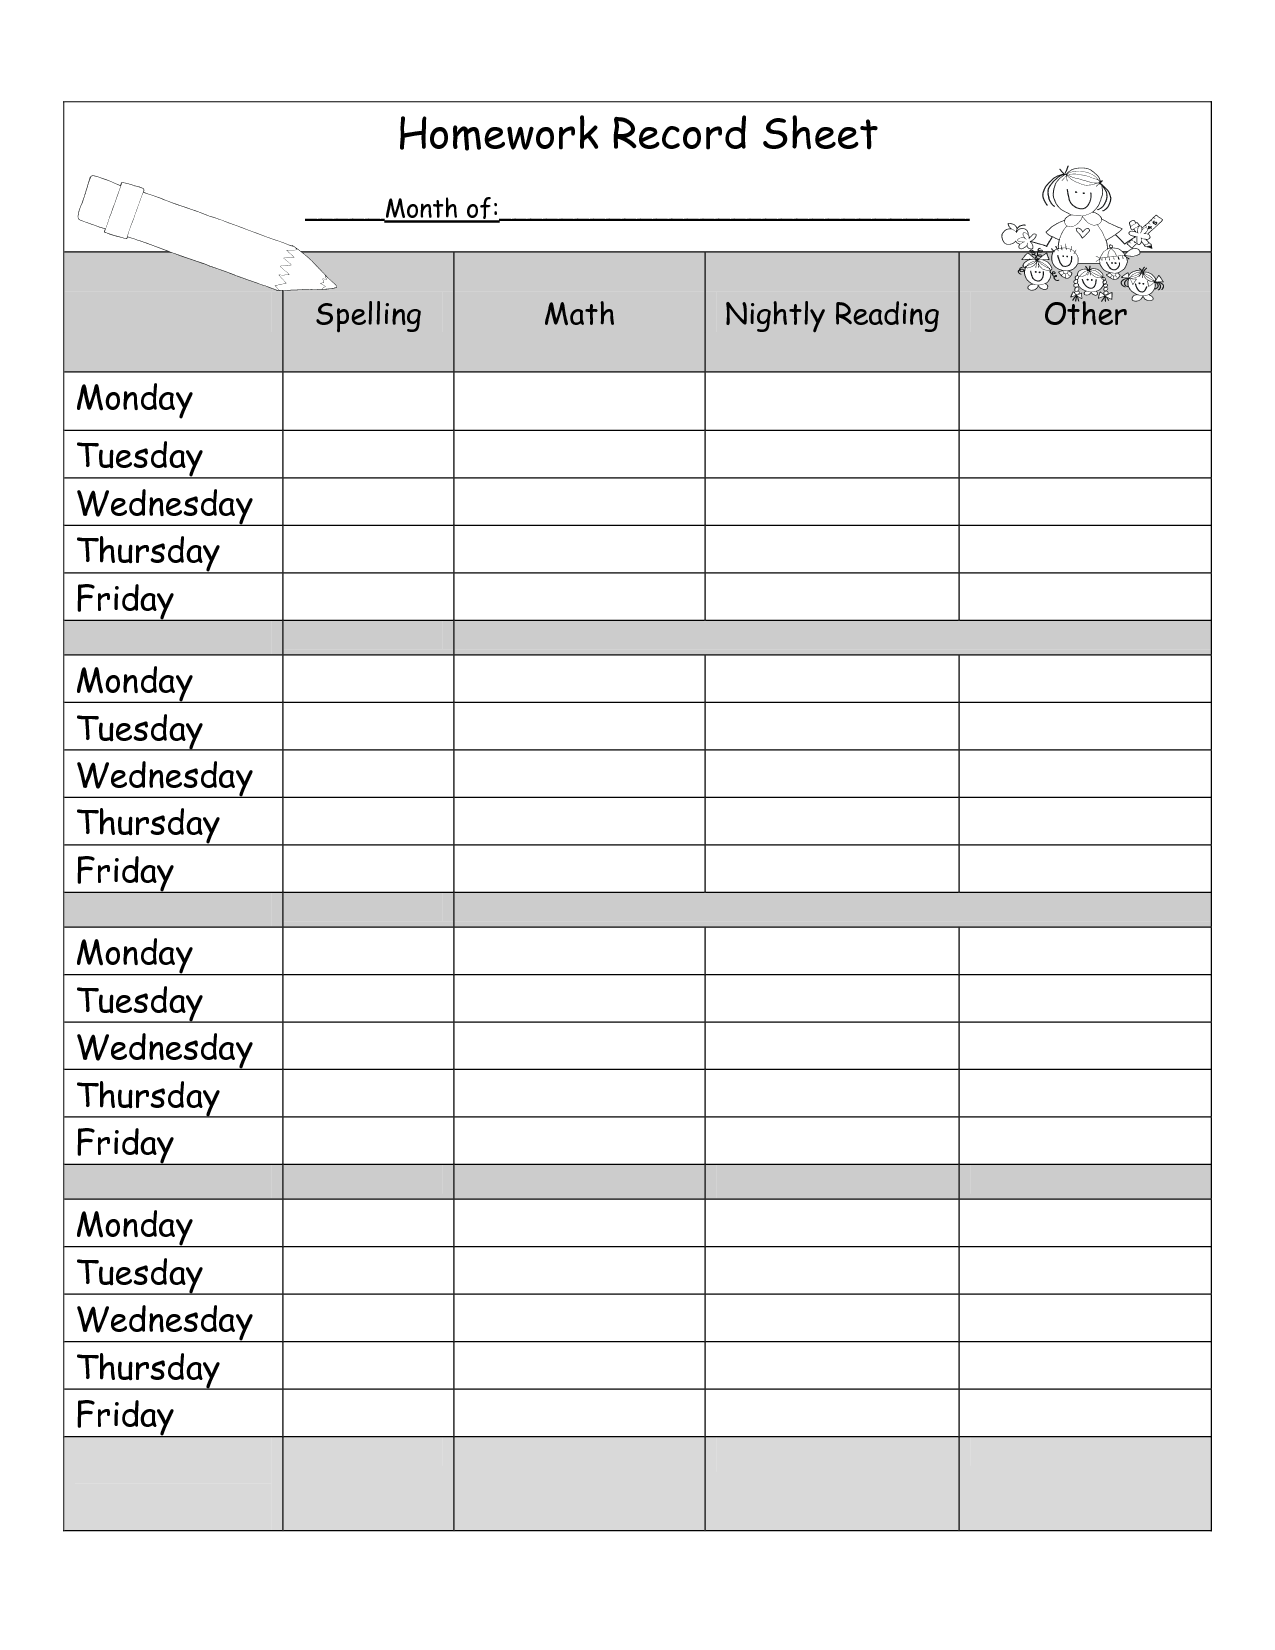 homework assignment sheet template